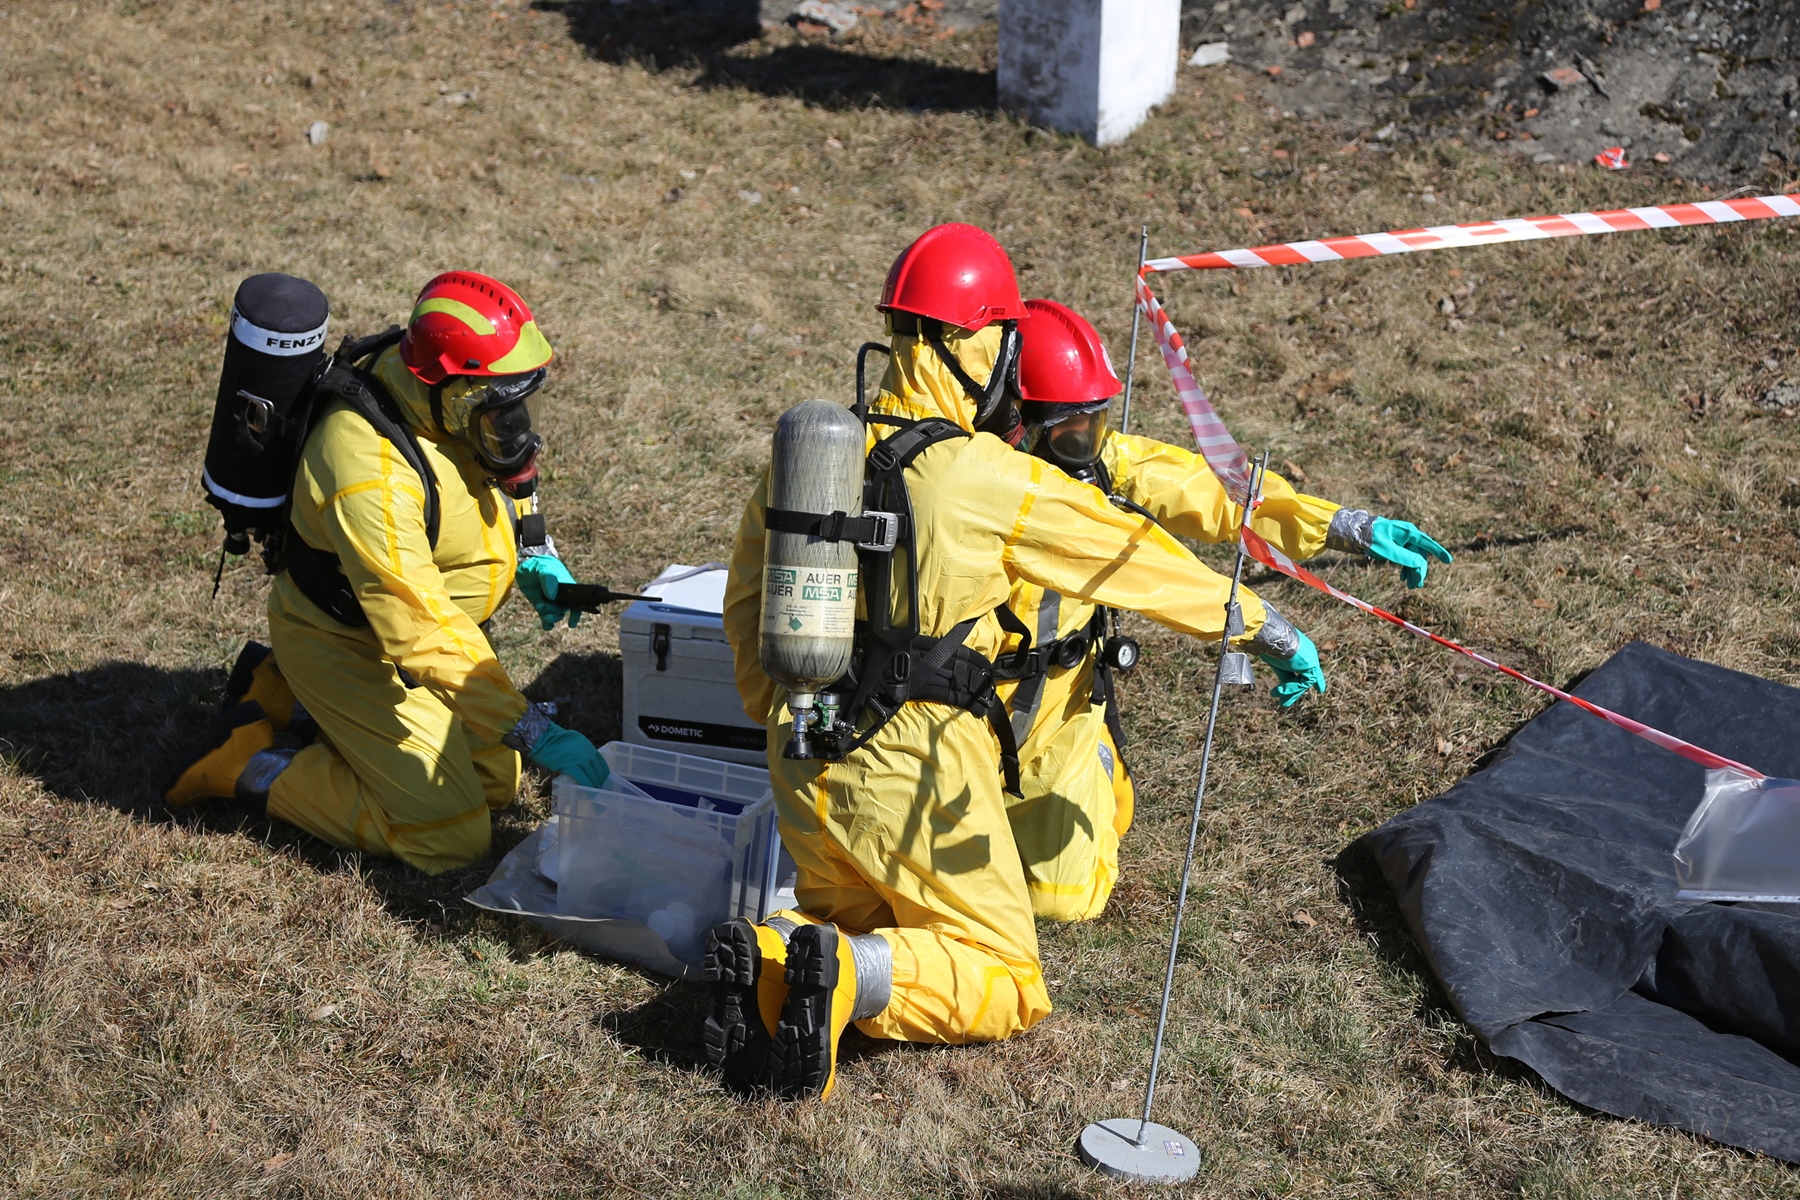 Szkolenie specjalistyczne w zakresie przeciwdziałania zagrożeniom chemicznym, biologicznym, radiologicznym, nuklearnym i wybuchowym